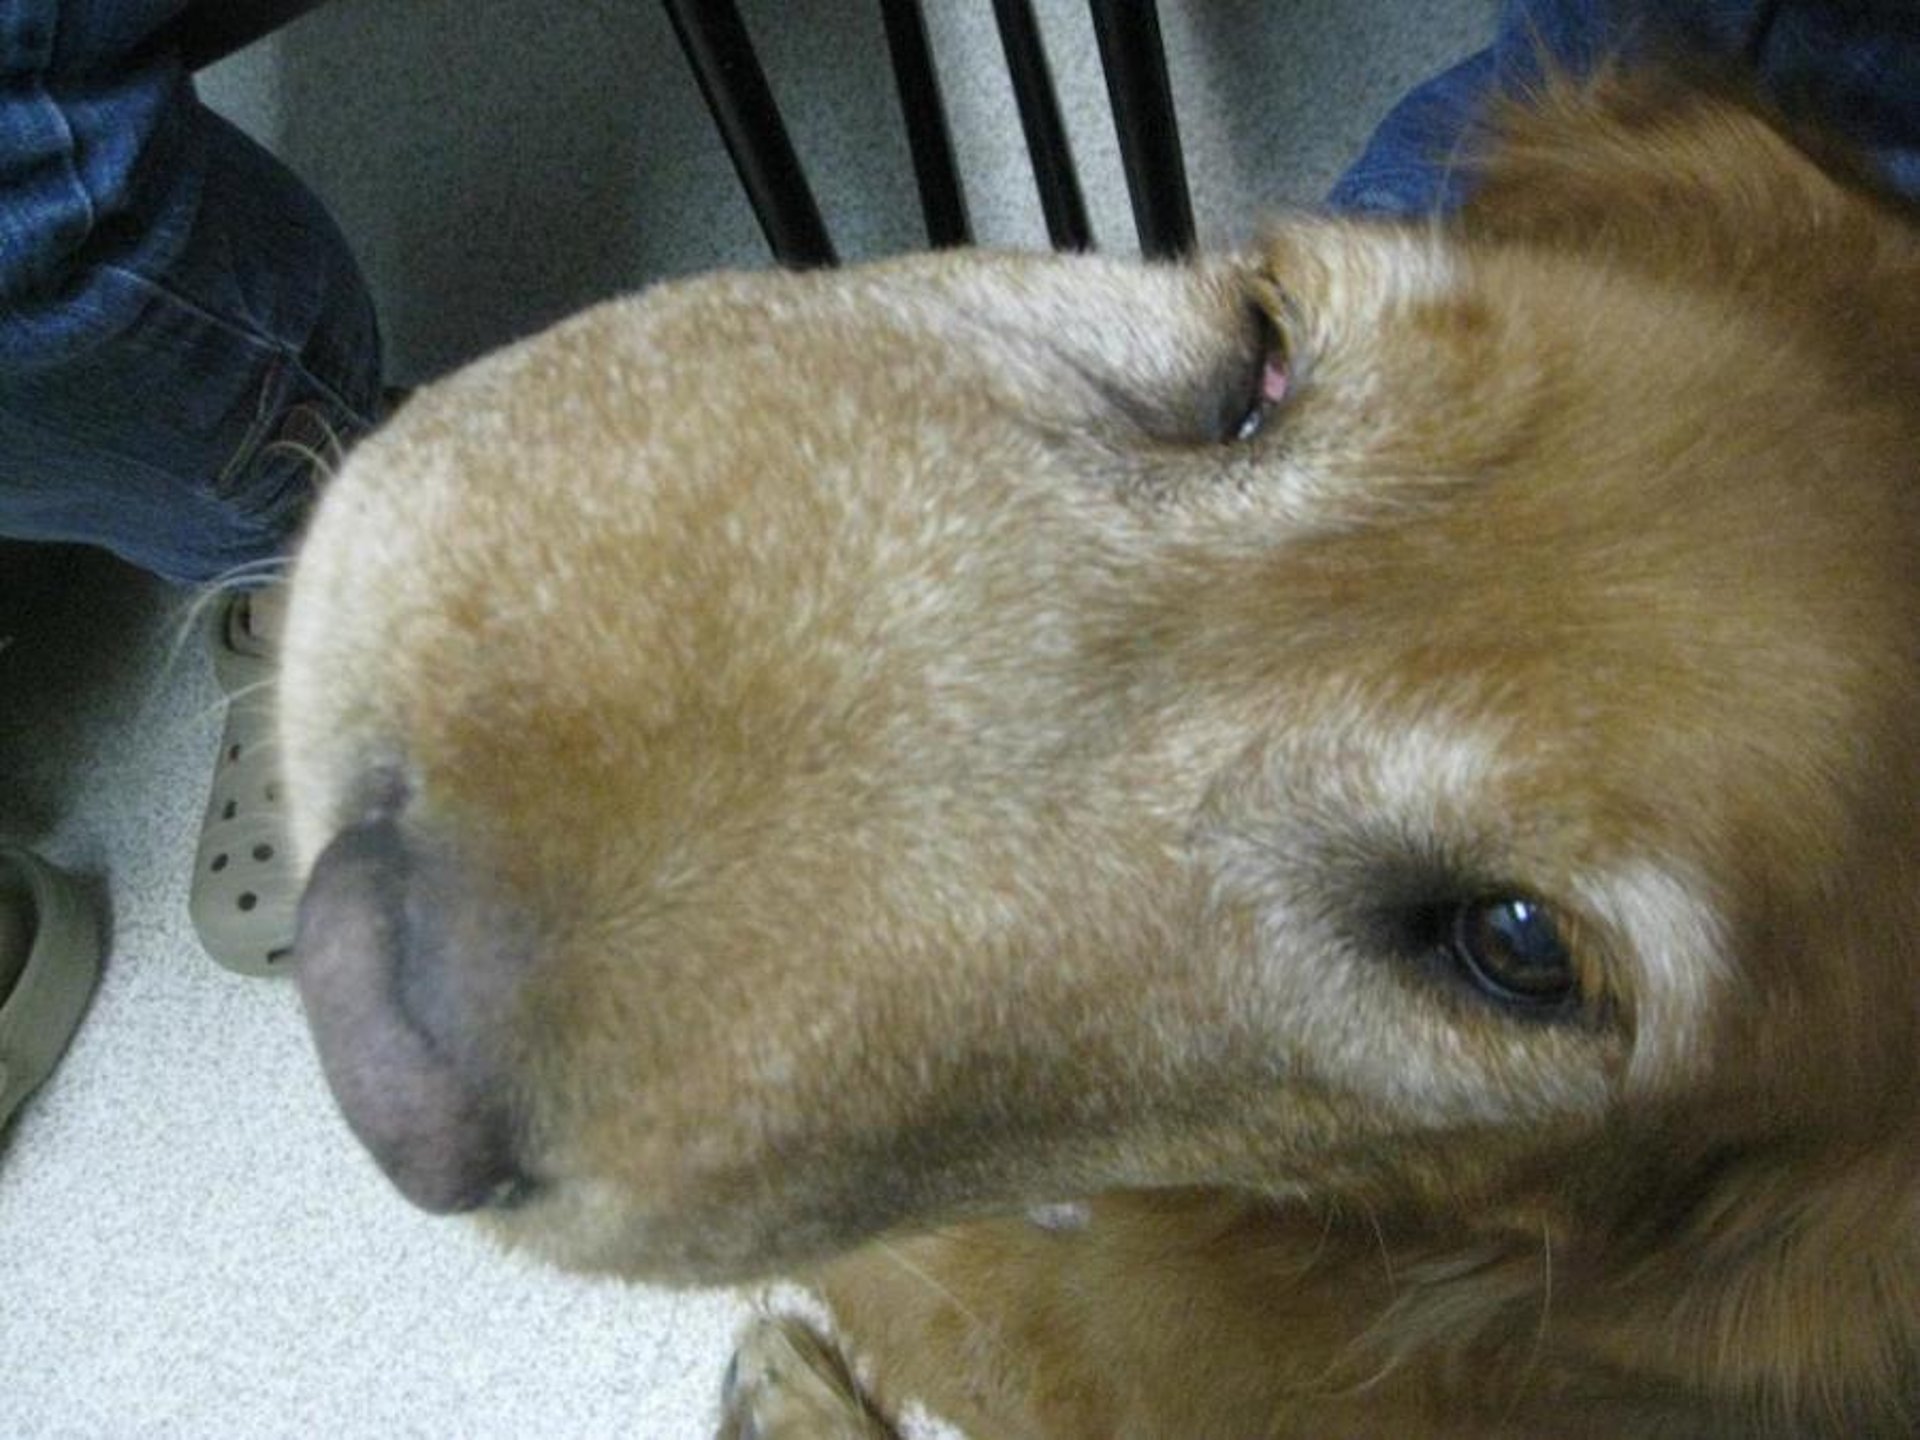 Low-grade "fibroma" fibrosarcoma in muzzle, dog